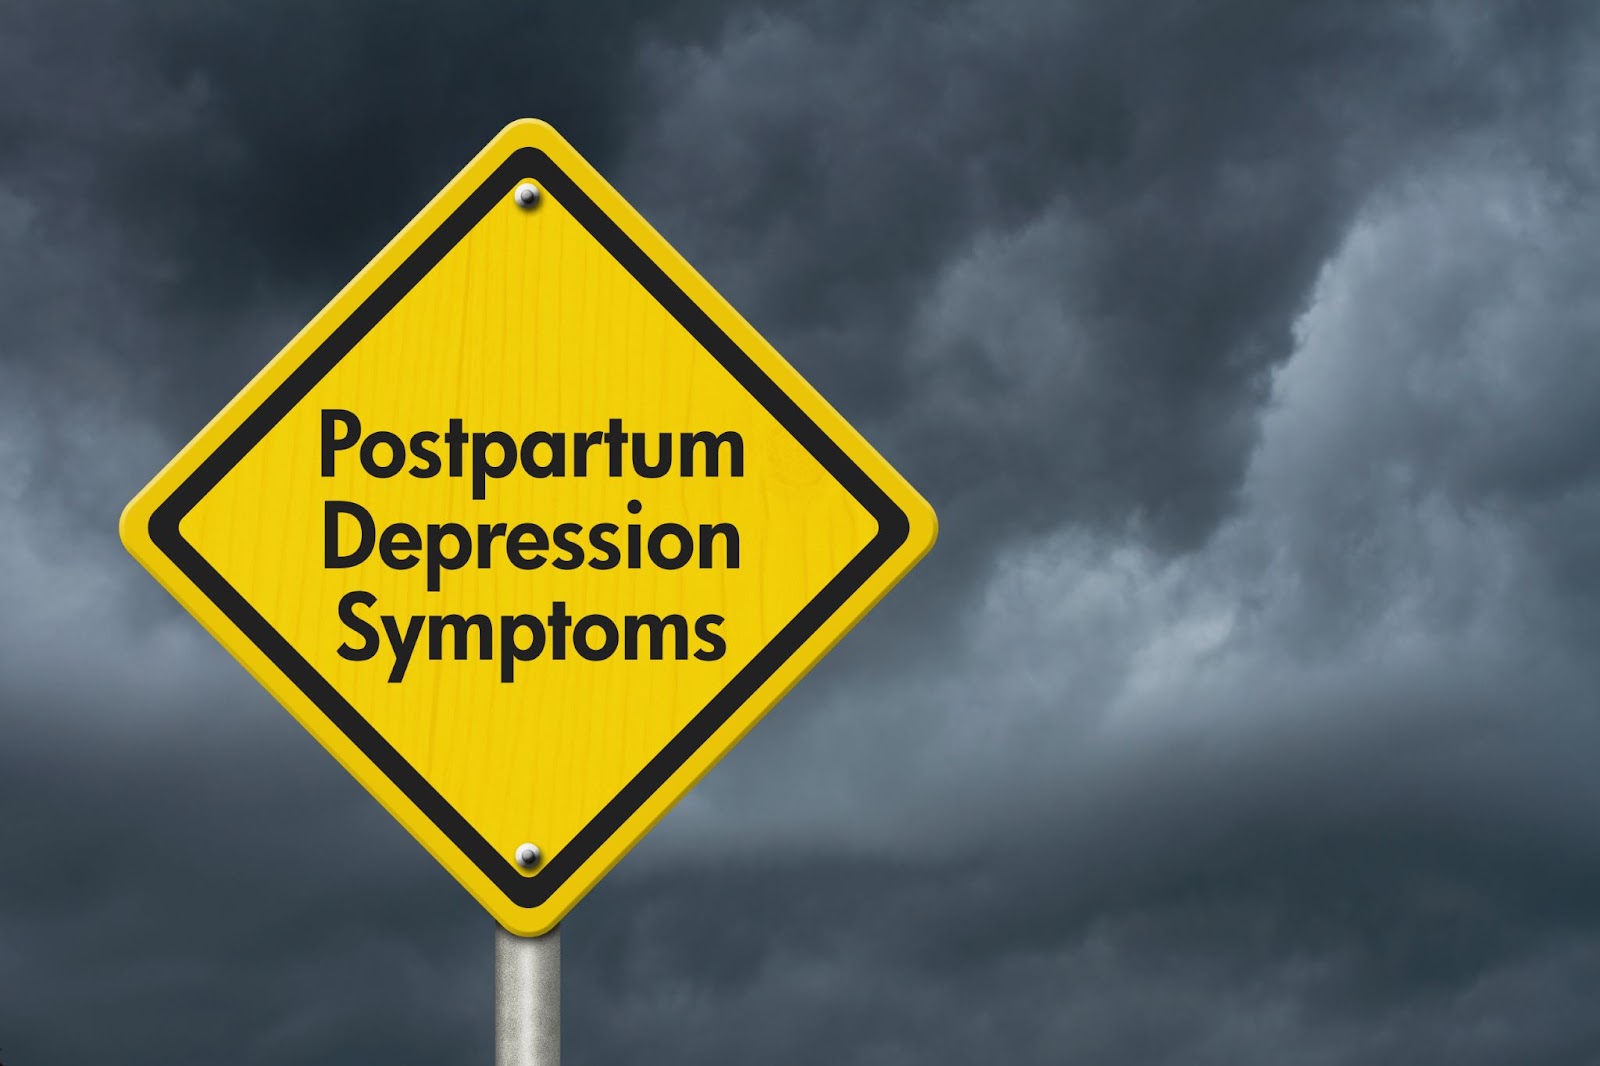 Postpartum Depression symptoms